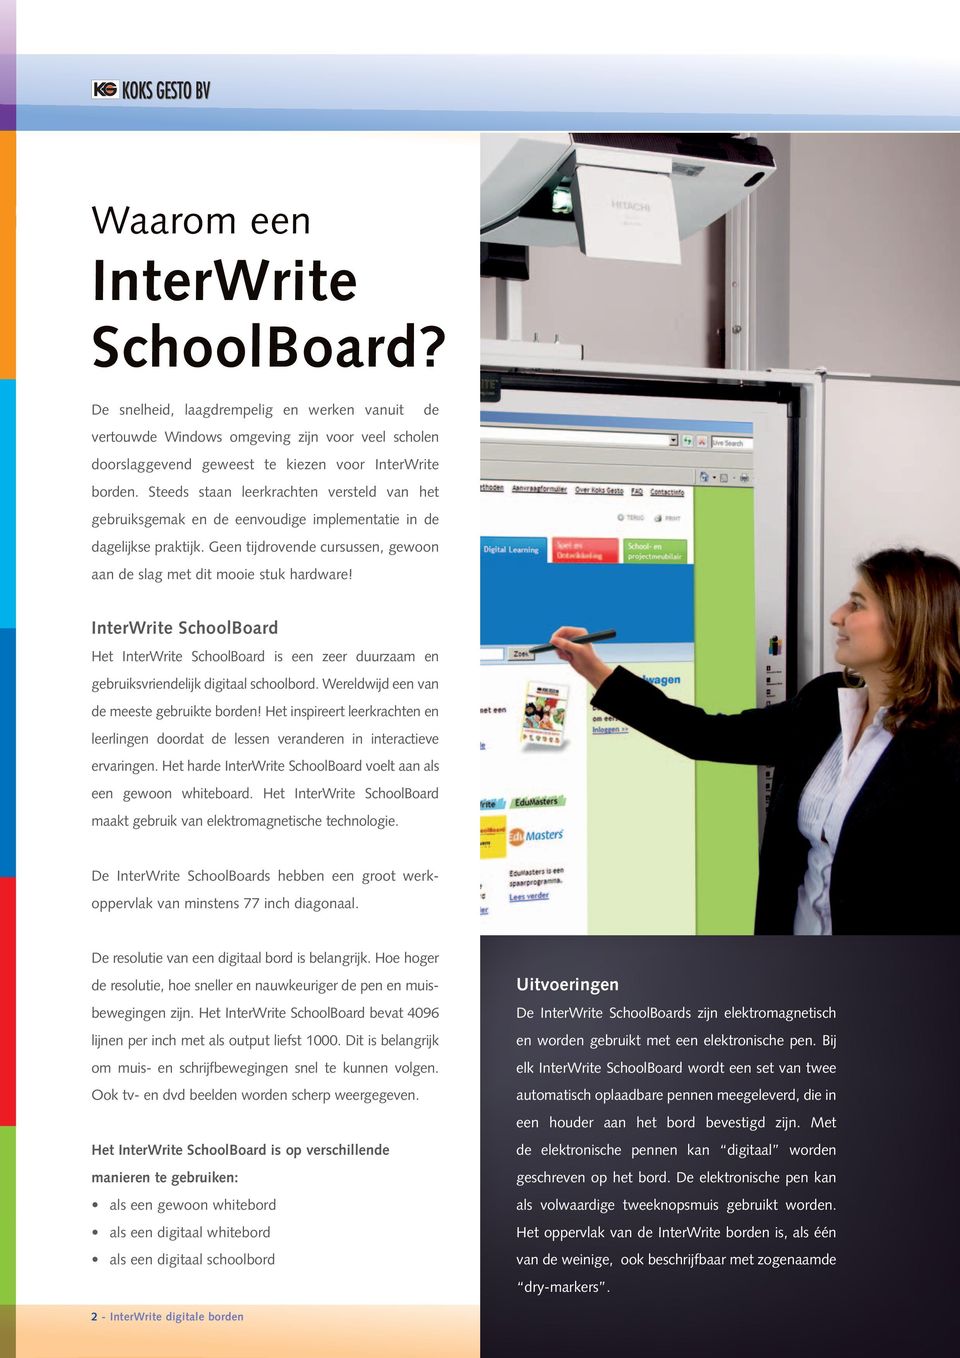 InterWrite SchoolBoard Het InterWrite SchoolBoard is een zeer duurzaam en gebruiksvriendelijk digitaal schoolbord. Wereldwijd een van de meeste gebruikte borden!